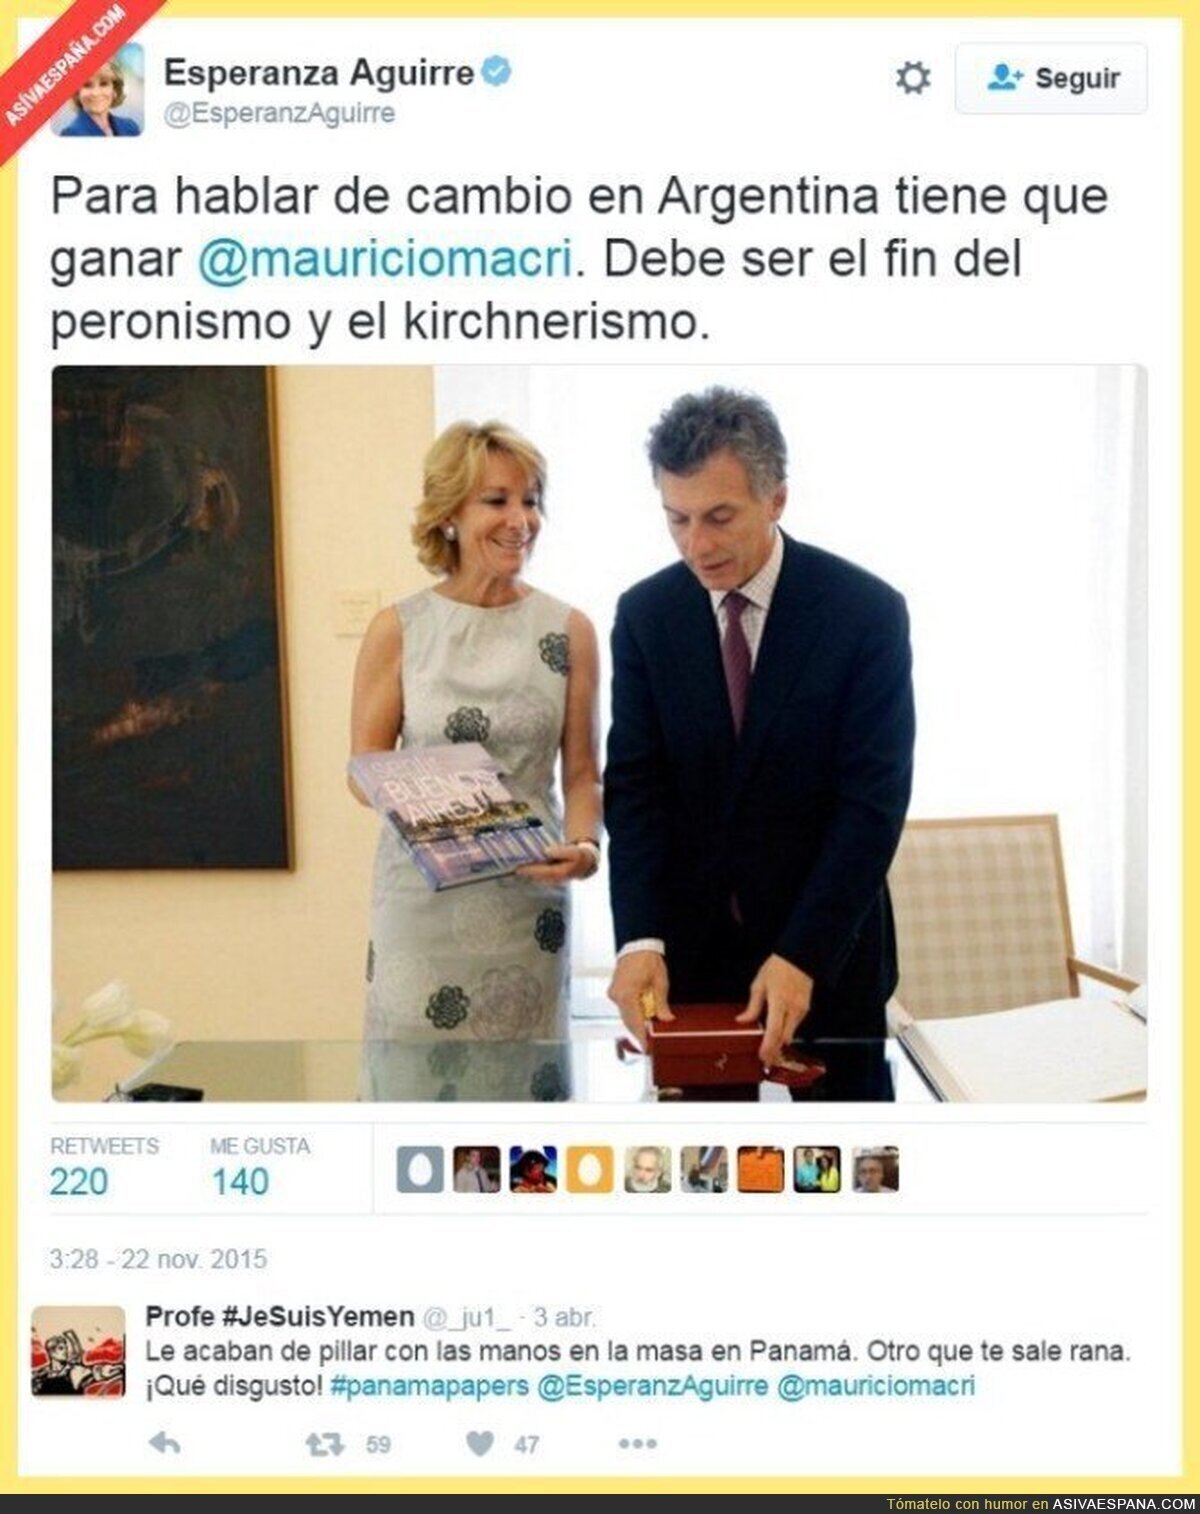 Aguirre y su indiscutible don, para saber apoyar siempre a los más "honrados"